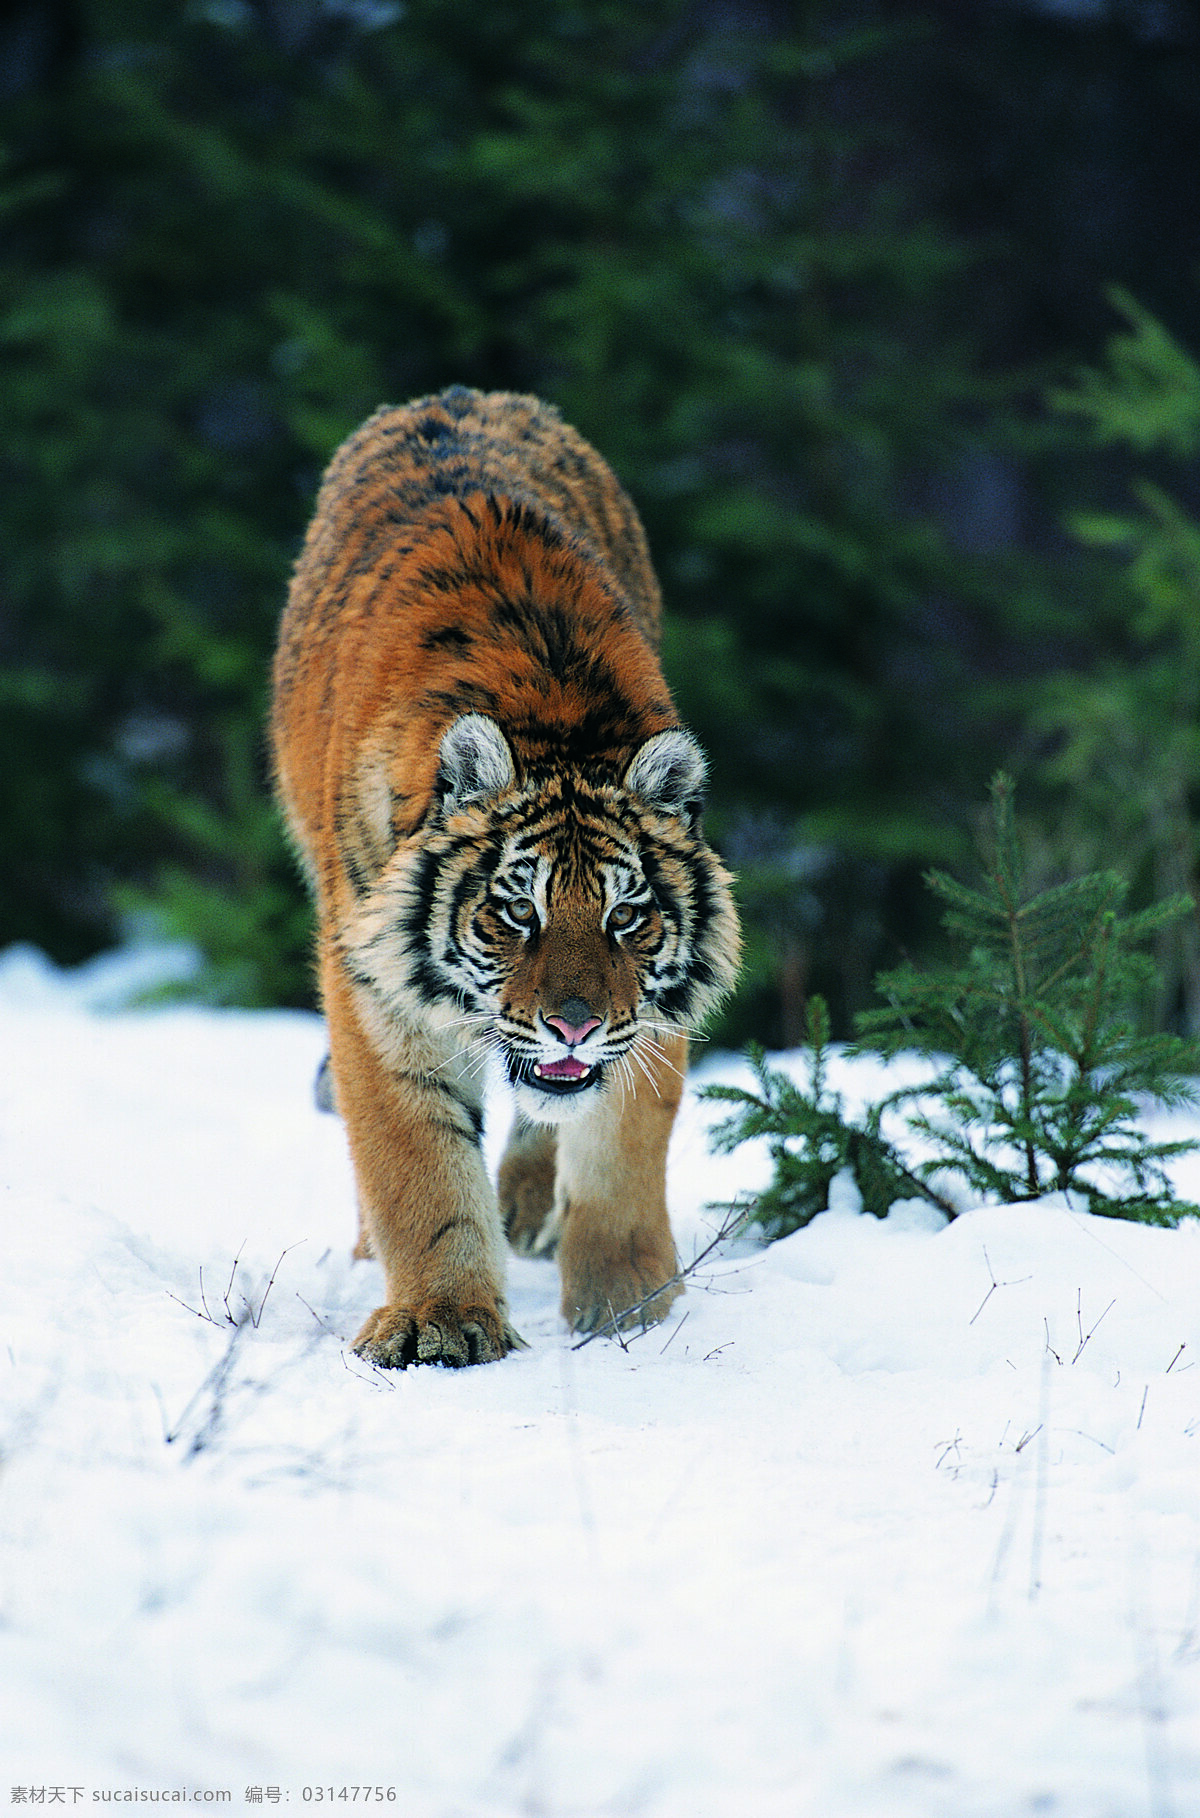 雪地 上 老虎 野生动物 动物世界 哺乳动物 摄影图 陆地动物 生物世界